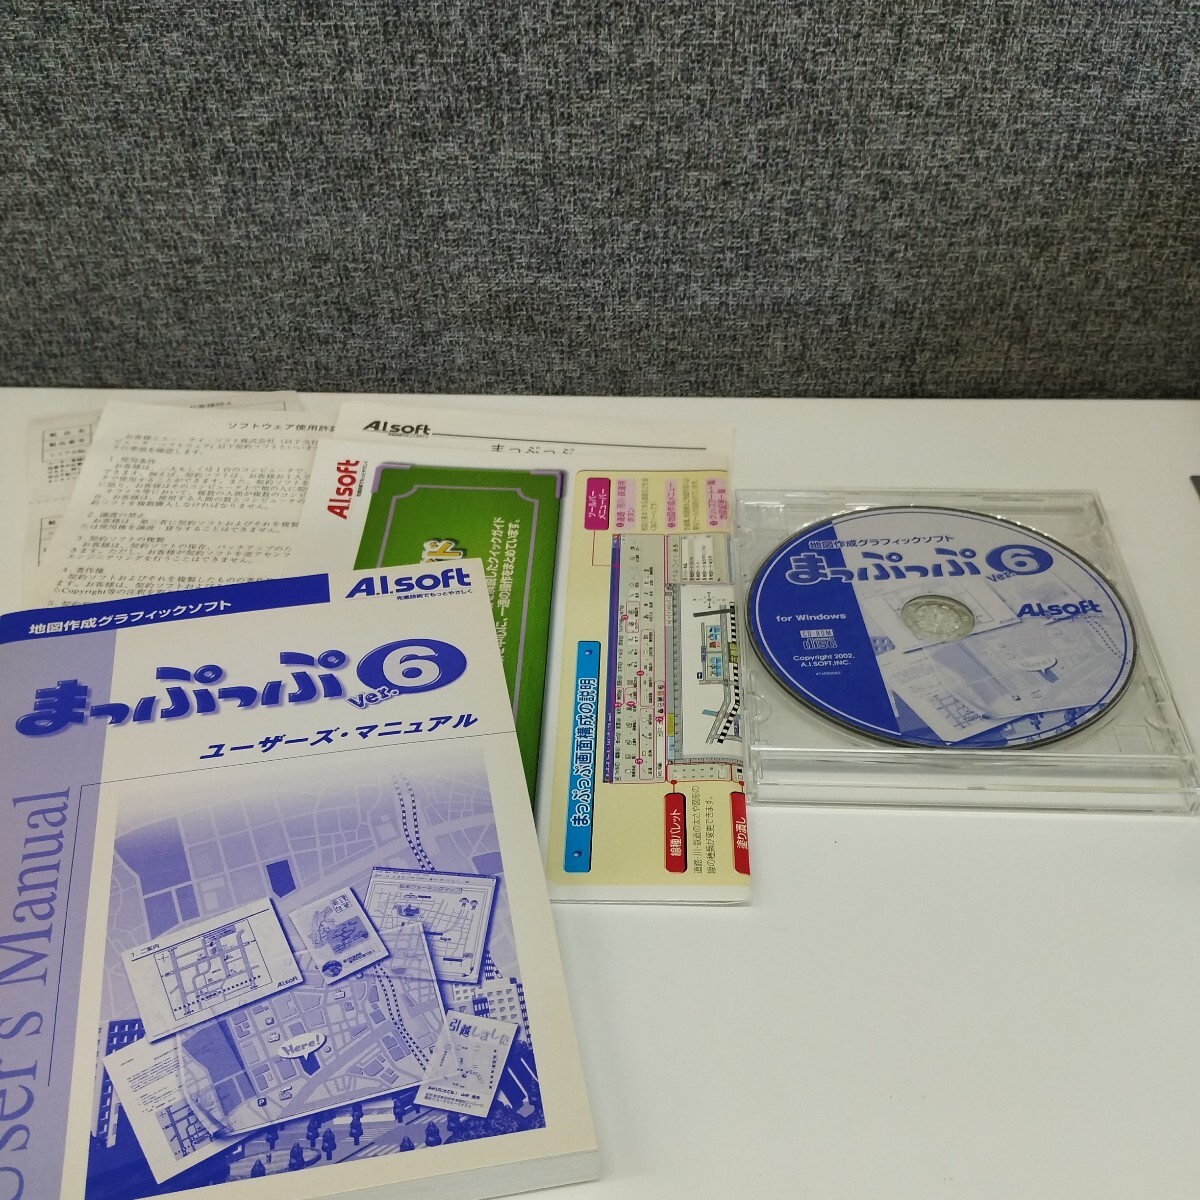 0603/1317 CD-ROM a.i.soft まっぷっぷ Ver.6の画像1